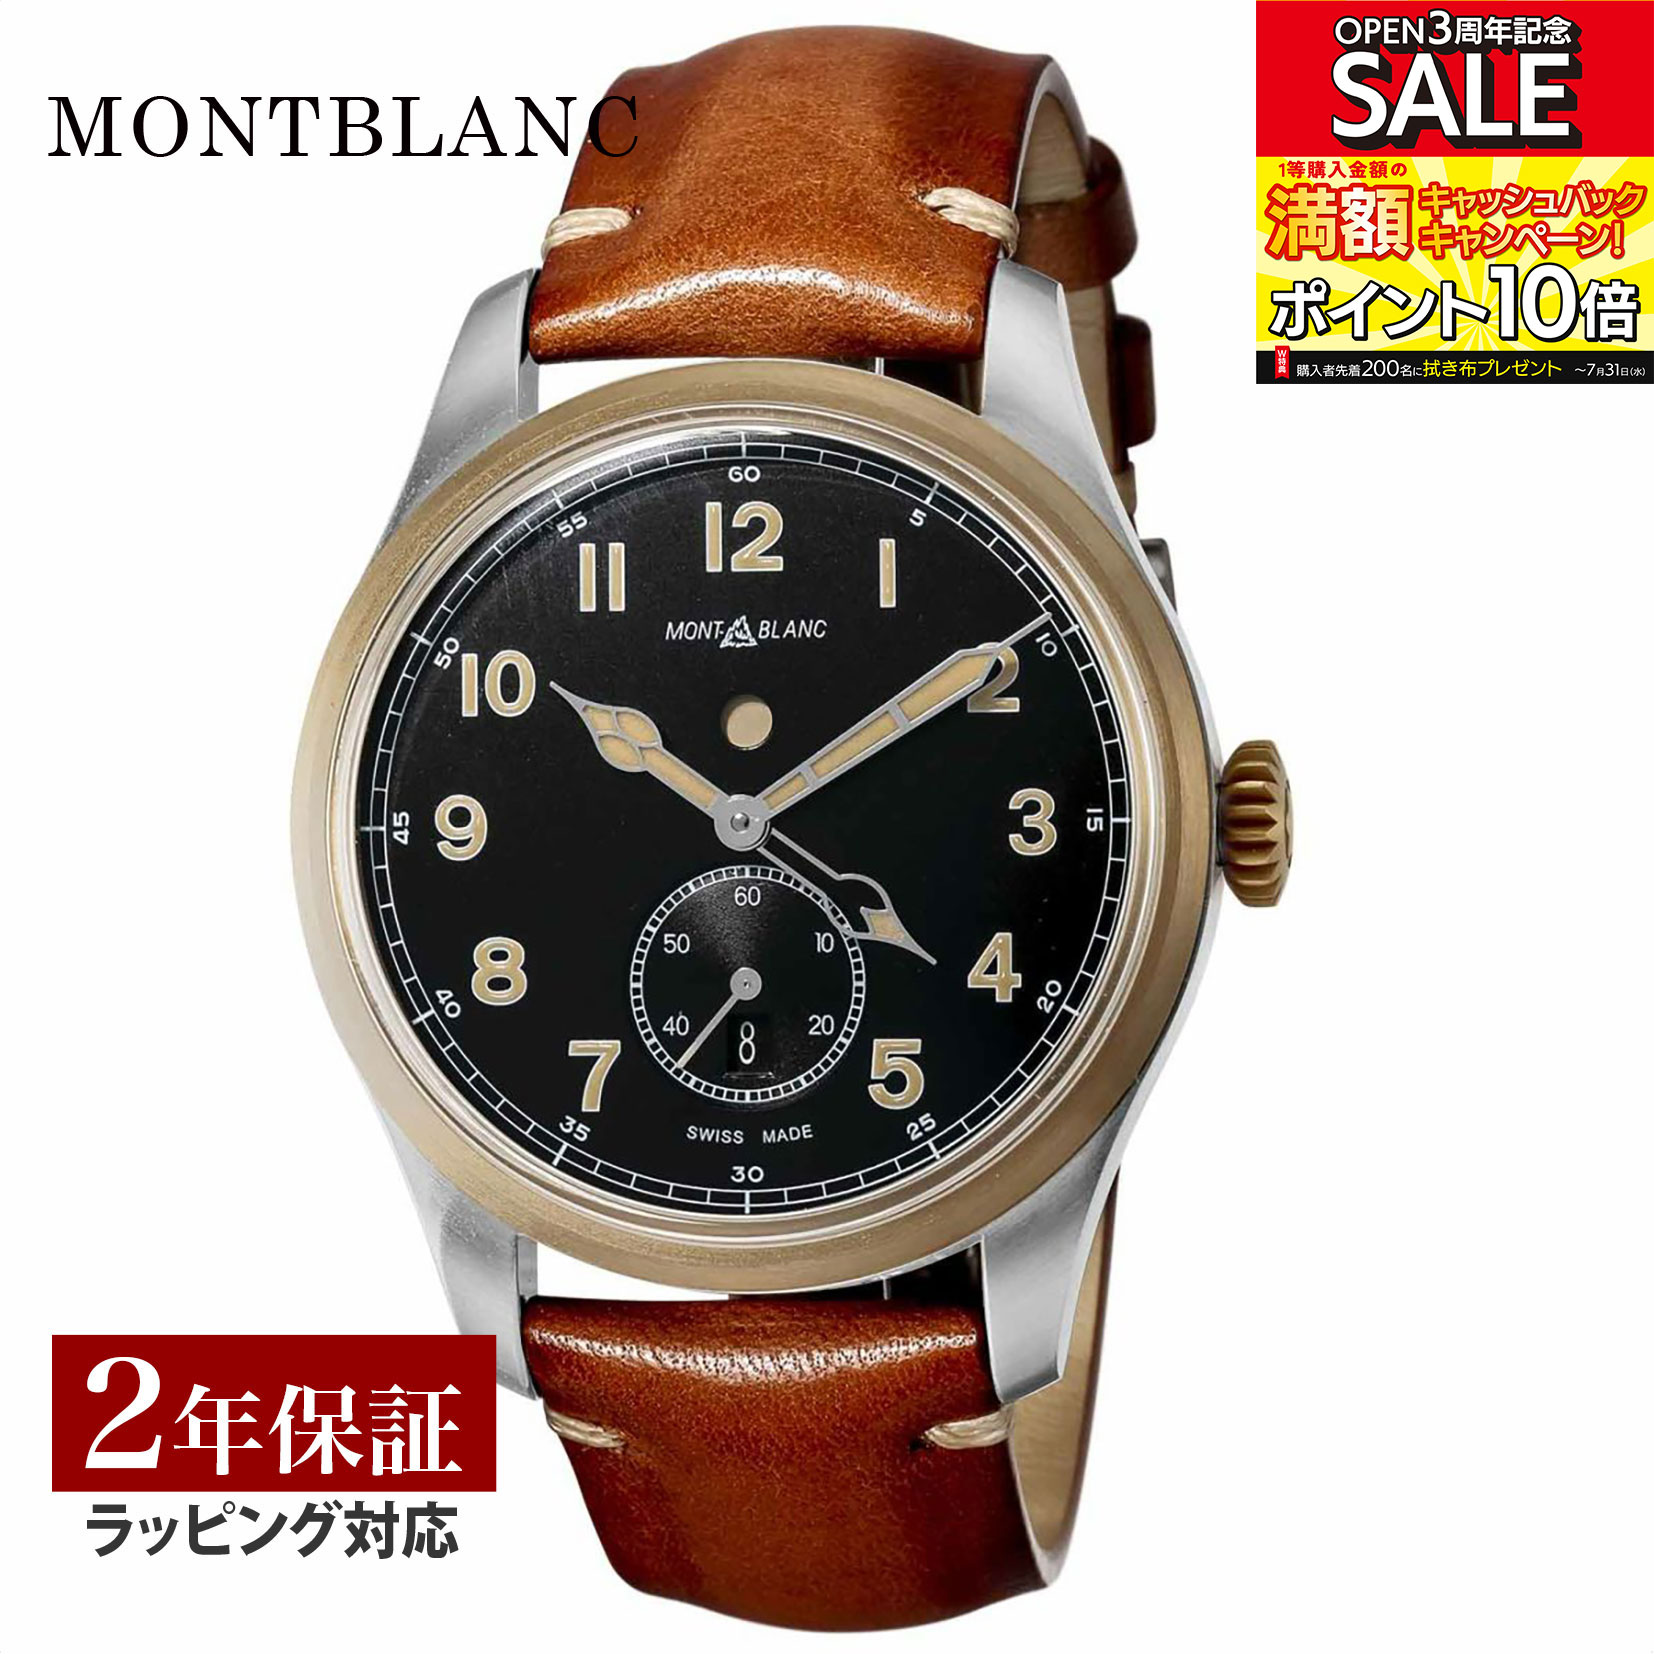 モンブラン Montblanc メンズ 時計 1858 自動巻 ブラック 116479 時計 腕時計 高級腕時計 ブランド 【ローン金利無料】